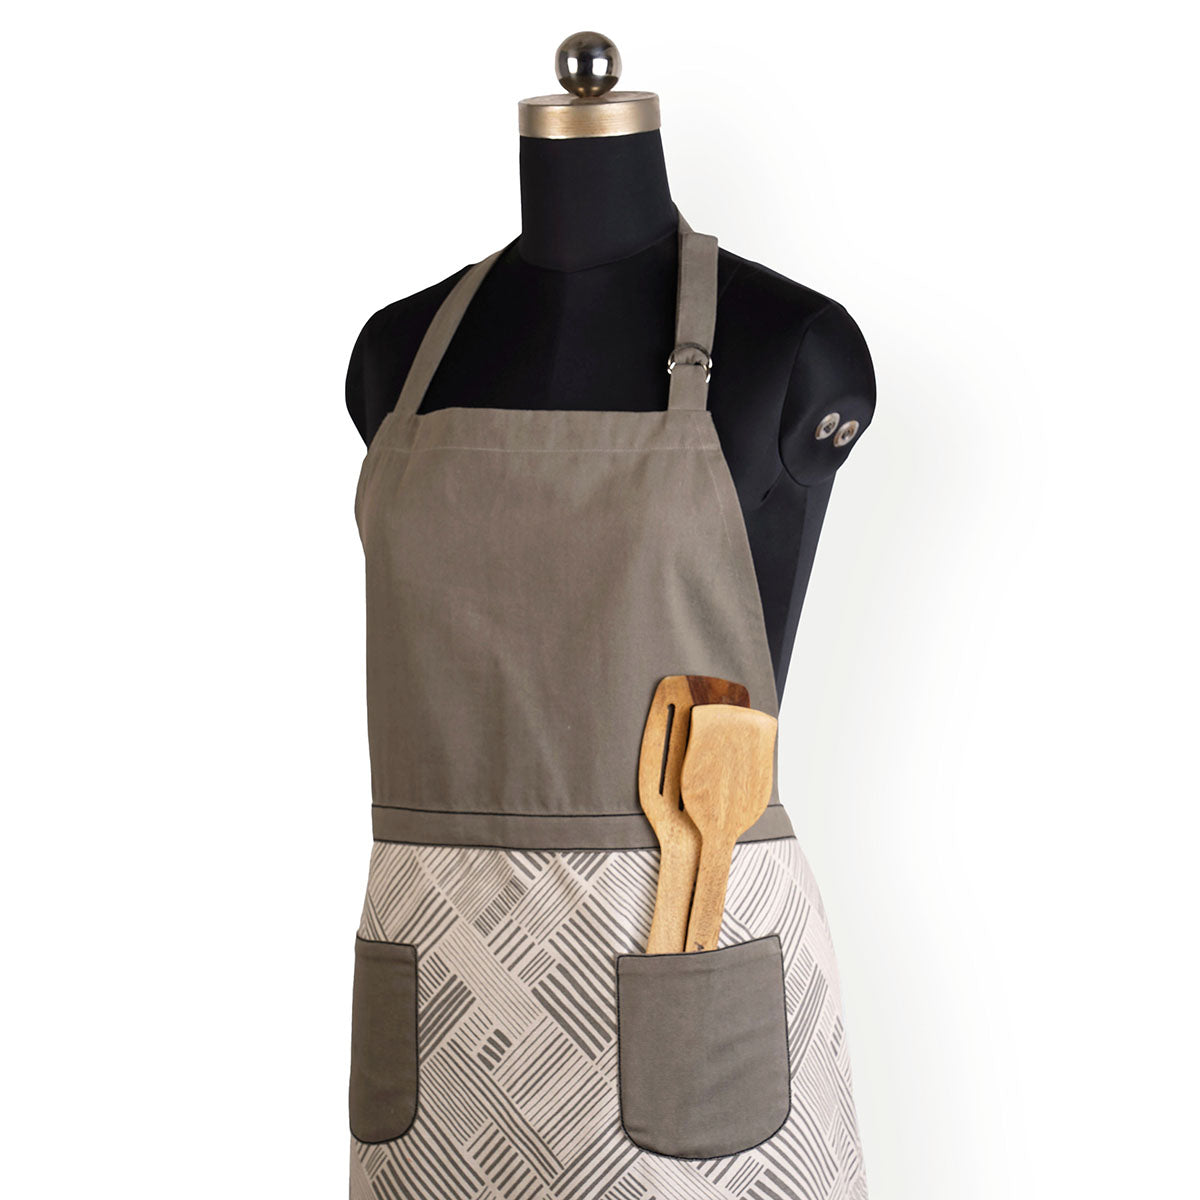 MODERN RETRO - Grey stripe print cotton apron, size 27"X 35"